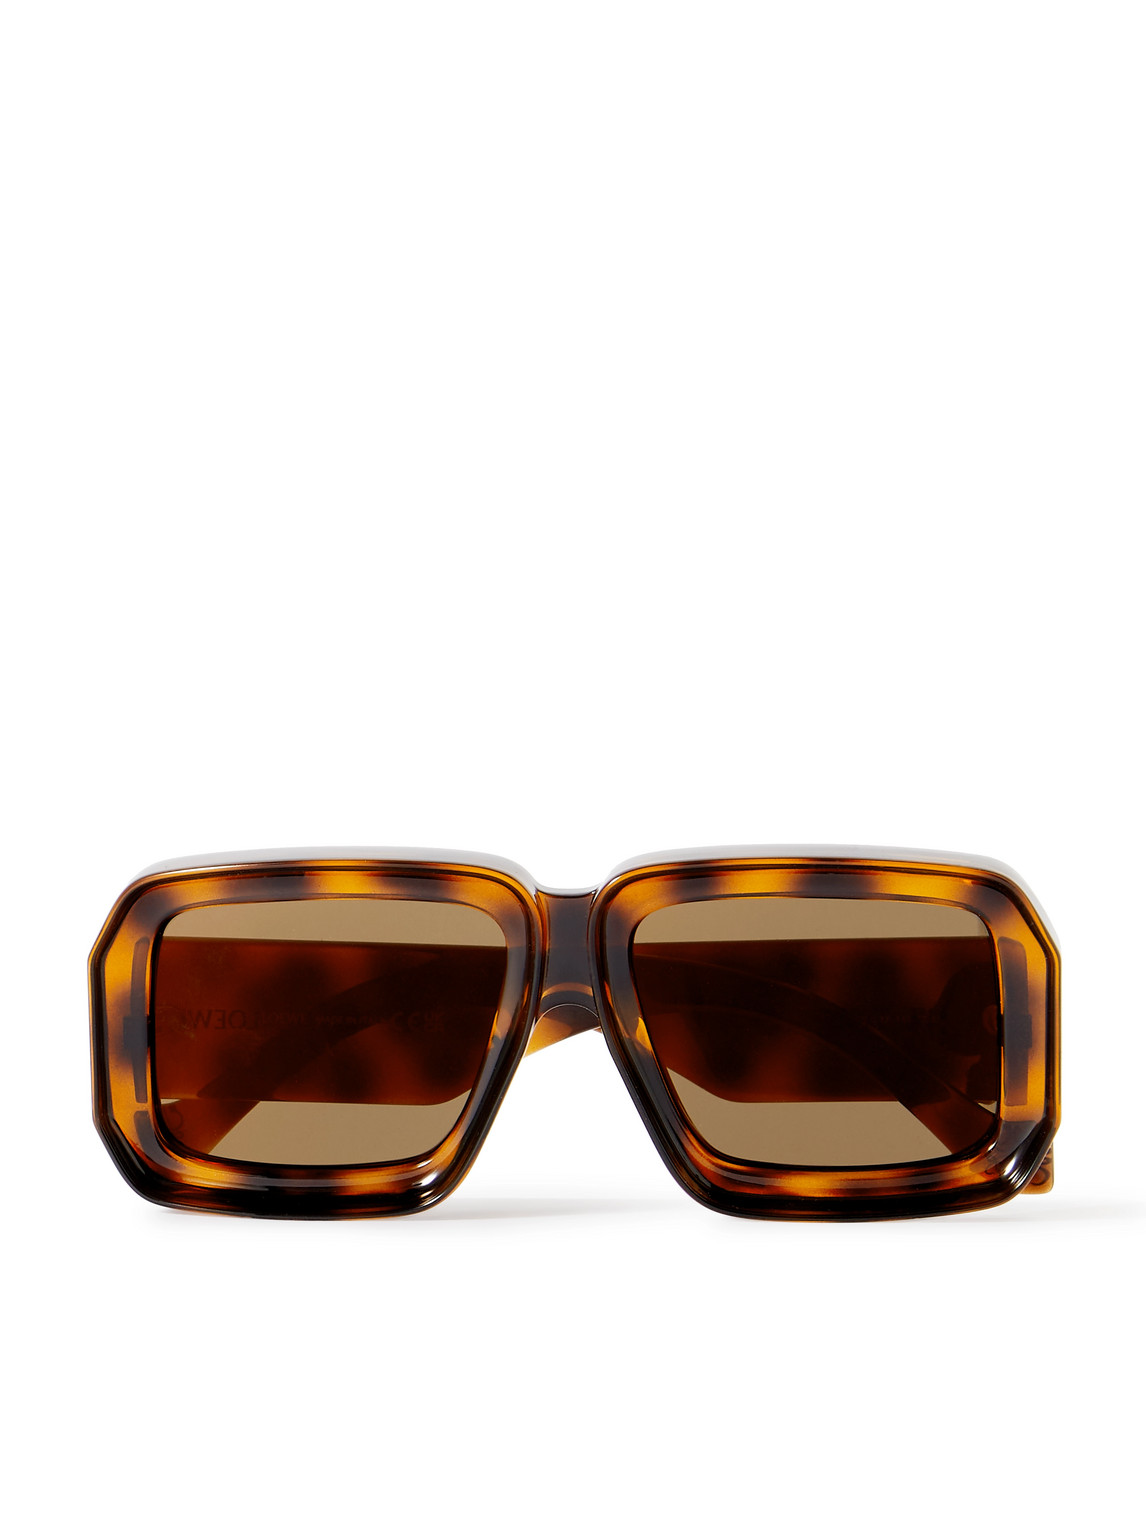 LOEWE - Paula's Ibiza Dive Oversized Square-Frame Tortoiseshell Acetate Sunglasses - Men - Tortoiseshell von LOEWE